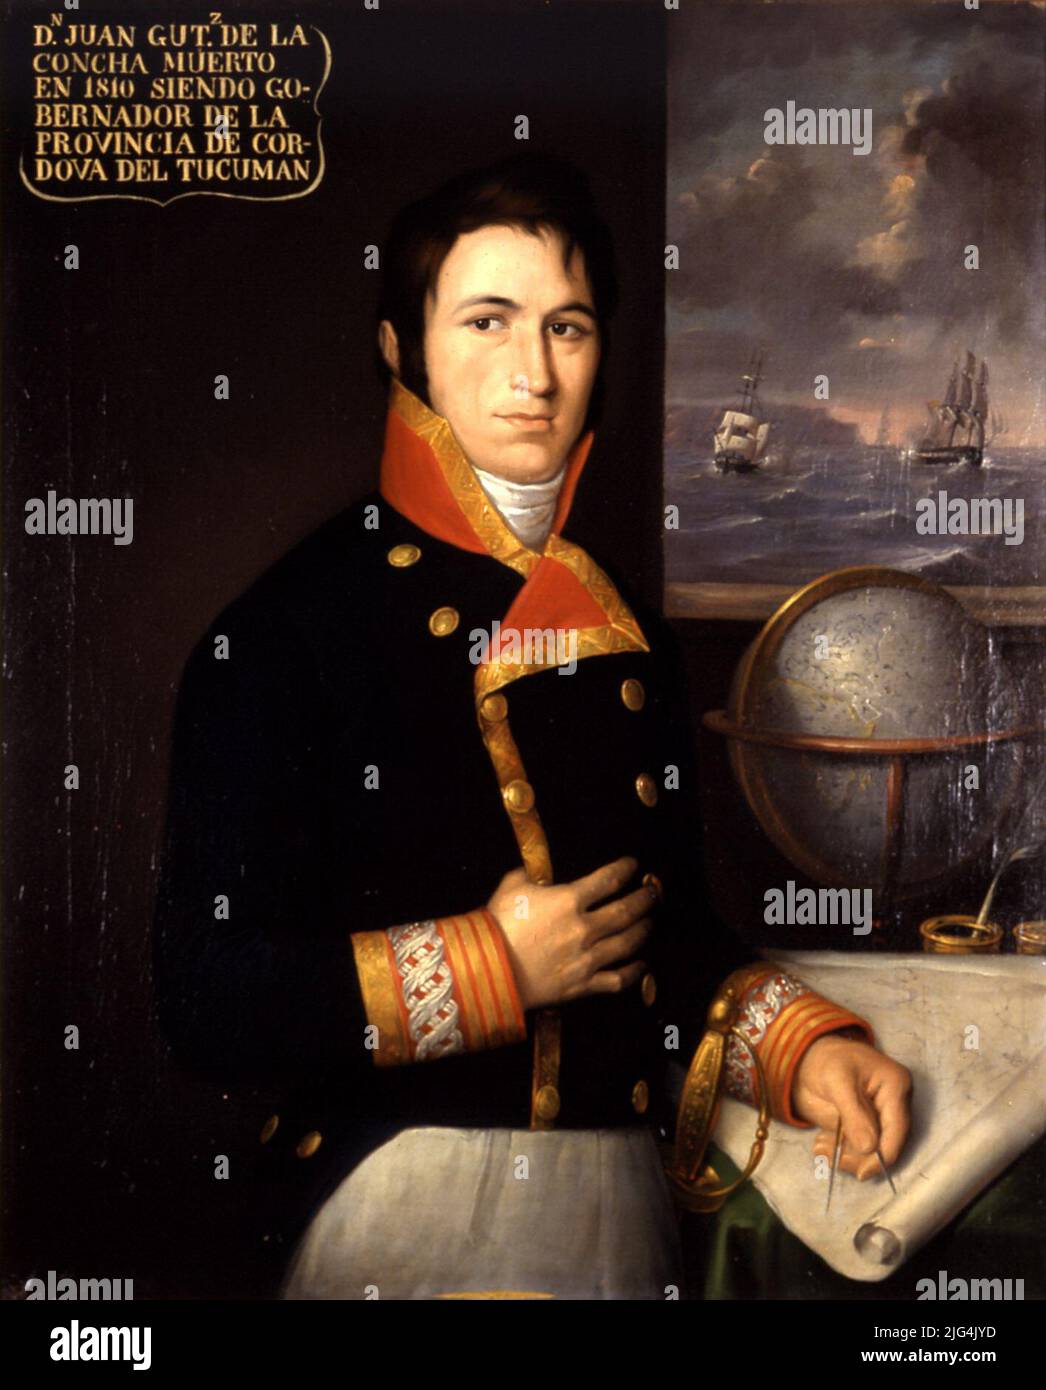 Porträt von Juan Antonio Gutiérrez de la Concha y Mazos de Güermes (1760-1810), Brigadier der Royal Navy. Hochformat. Halber Körper, gerade; kleine Brigadier-Uniform der Marine mit Truppenkommando; eine goldene galñon fehlt an der Bass-Front, was darauf hinweist, dass die Uniform eines Porträts des Leiters der Truppe, Generalleutnant oder Hauptmann, in dem diese Gallone nicht geschätzt wurde, wenn sie vom Gürtel bedeckt wurde. Linke Hand mit Compas auf nautischem Buchstaben; Hintergrund: Globe und links zwei Schiffe, die kämpfen, sind durch das Fenster zu sehen. Im linken oberen Winkel erscheint die Legende: 'Mr. Juan Gutiérrez d Stockfoto